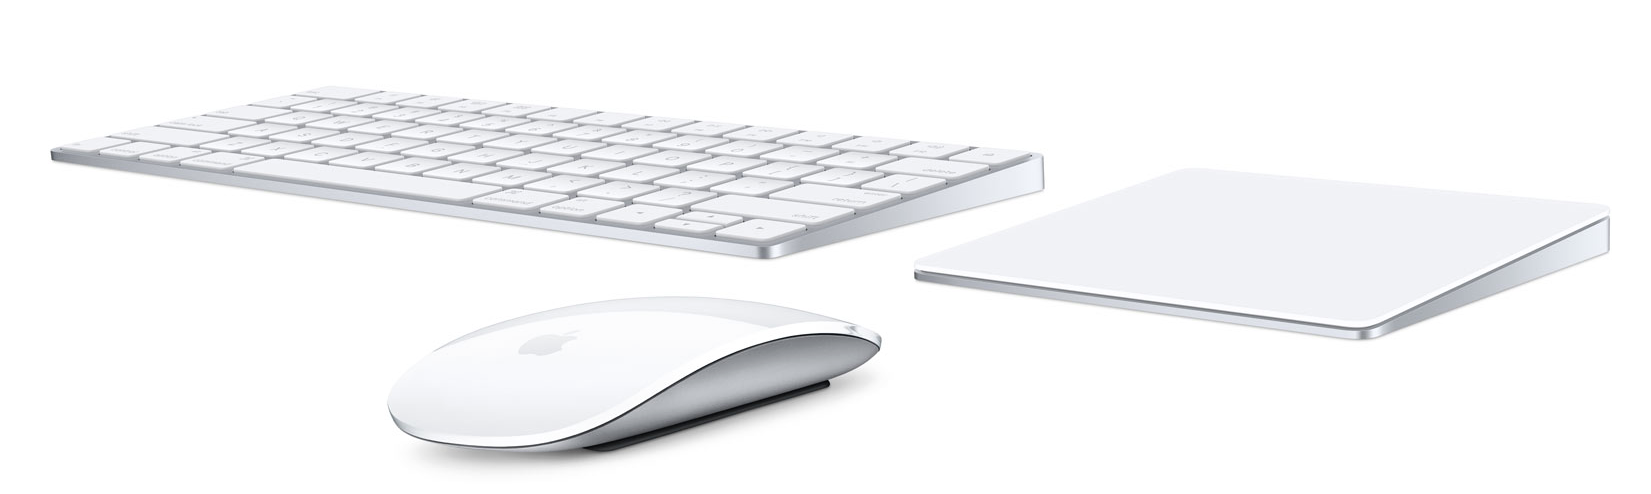 Ecco i nuovi accessori Apple: Nuova Magic Keyboard, Magic Mouse 2 e Magic TrackPad 2